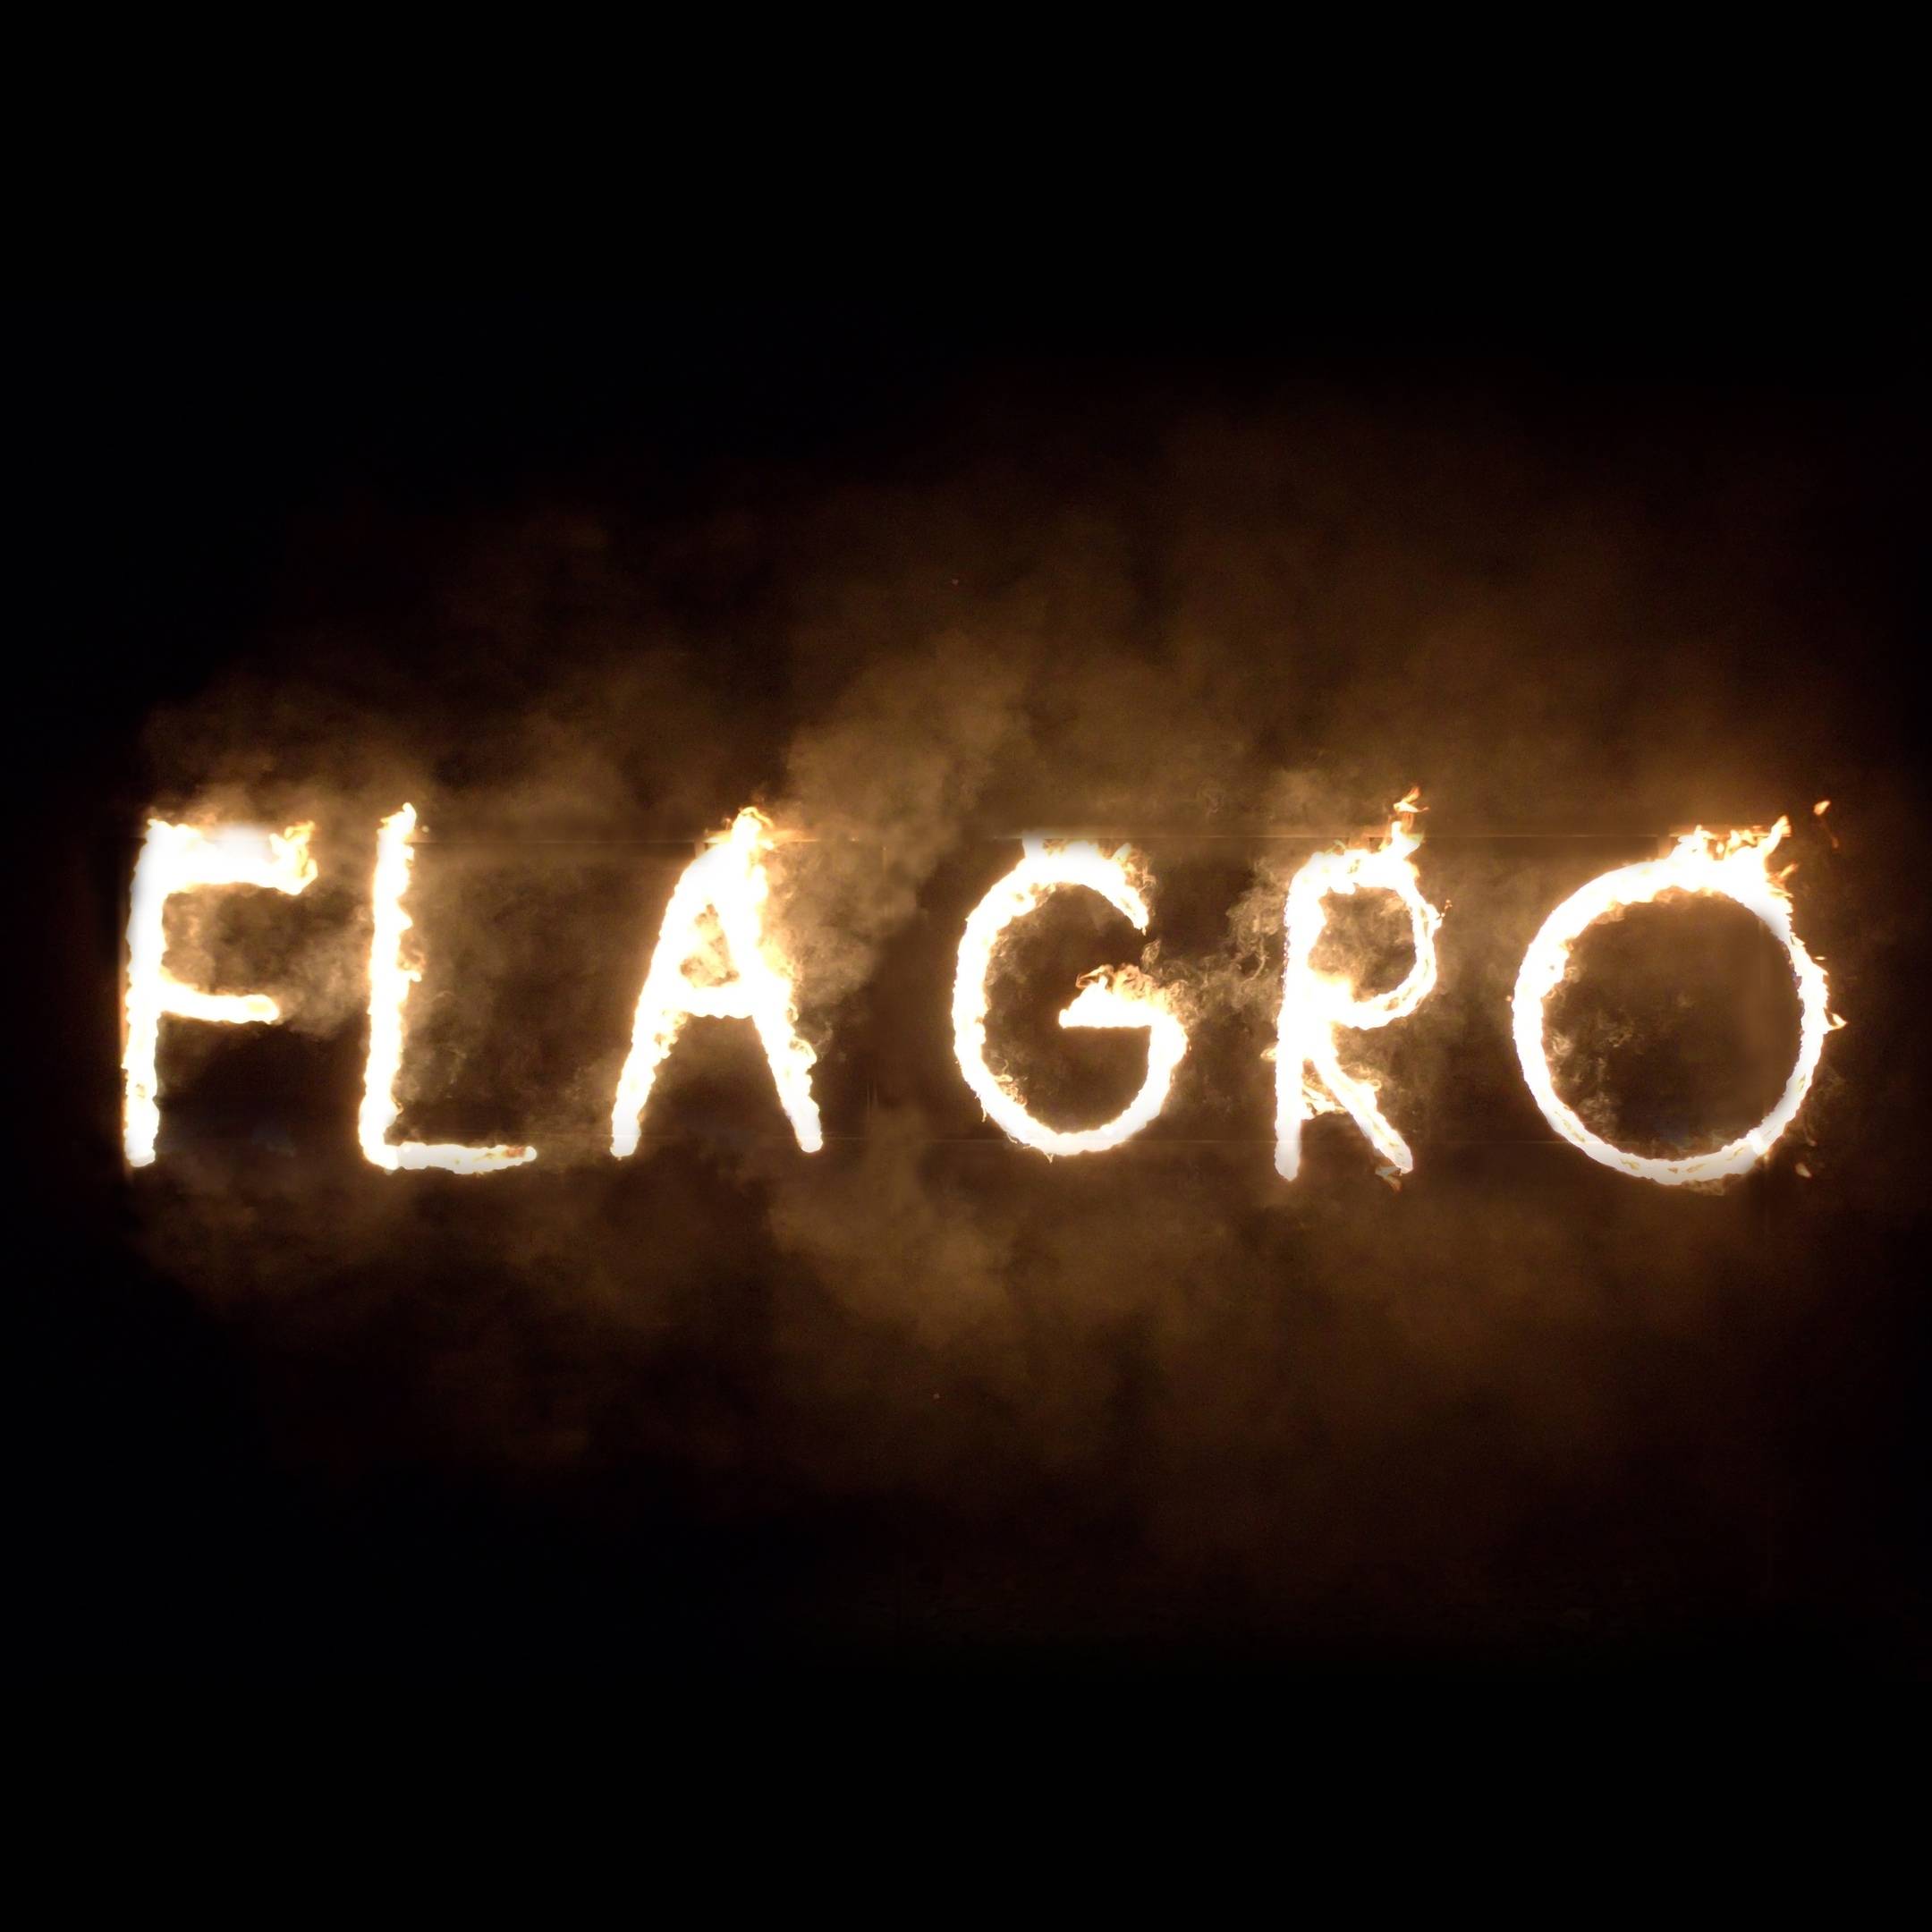 Иконка канала Фаер шоу Flagro